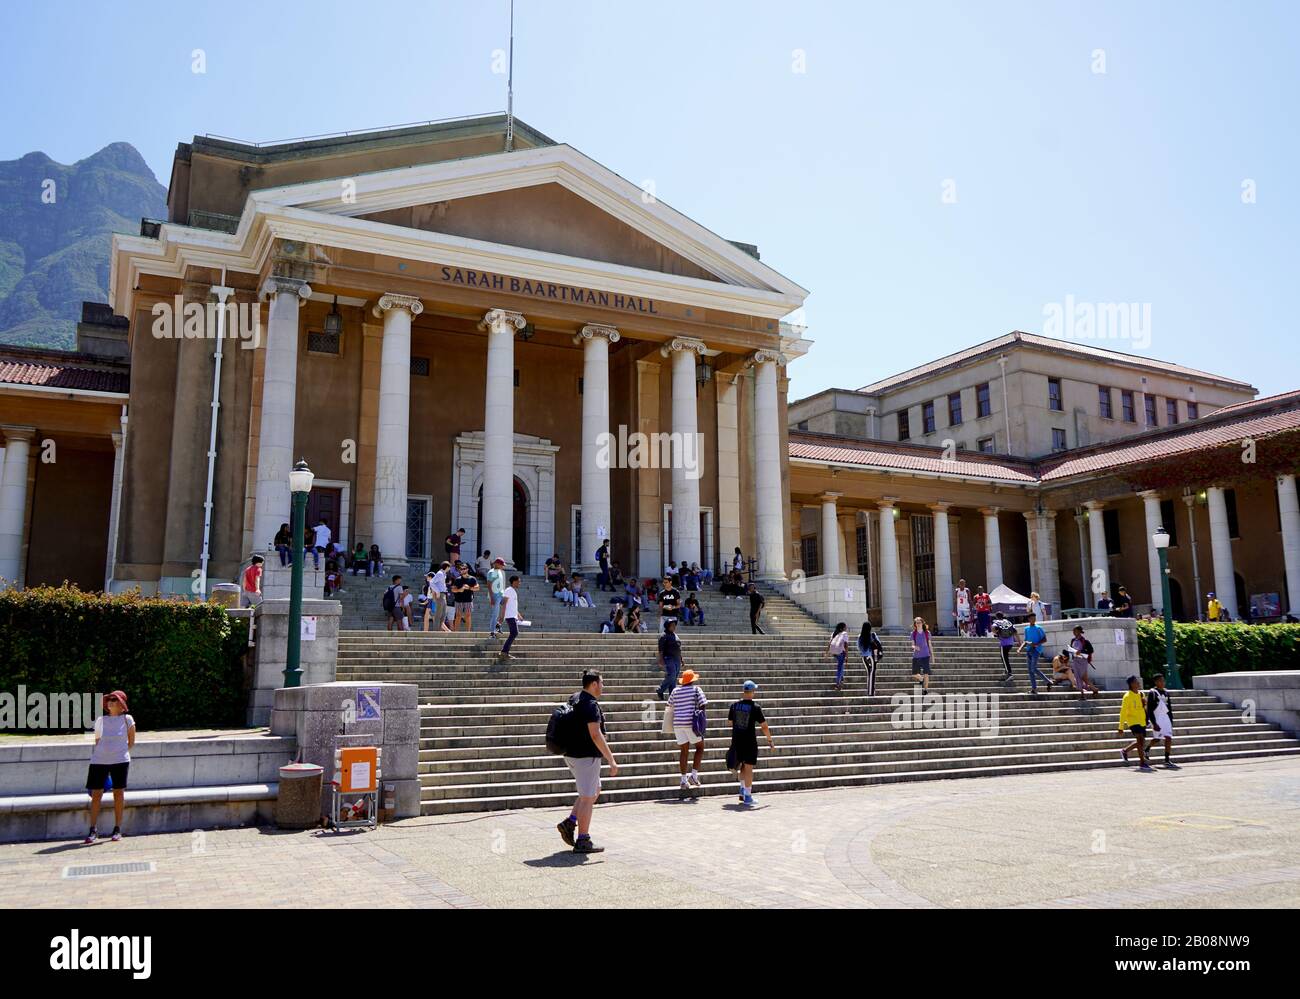 Le Cap, Afrique du Sud - 19 février 2020 : Les Étudiants s'assoient sur les marches emblématiques de l'Université du Cap en Afrique du Sud. Banque D'Images